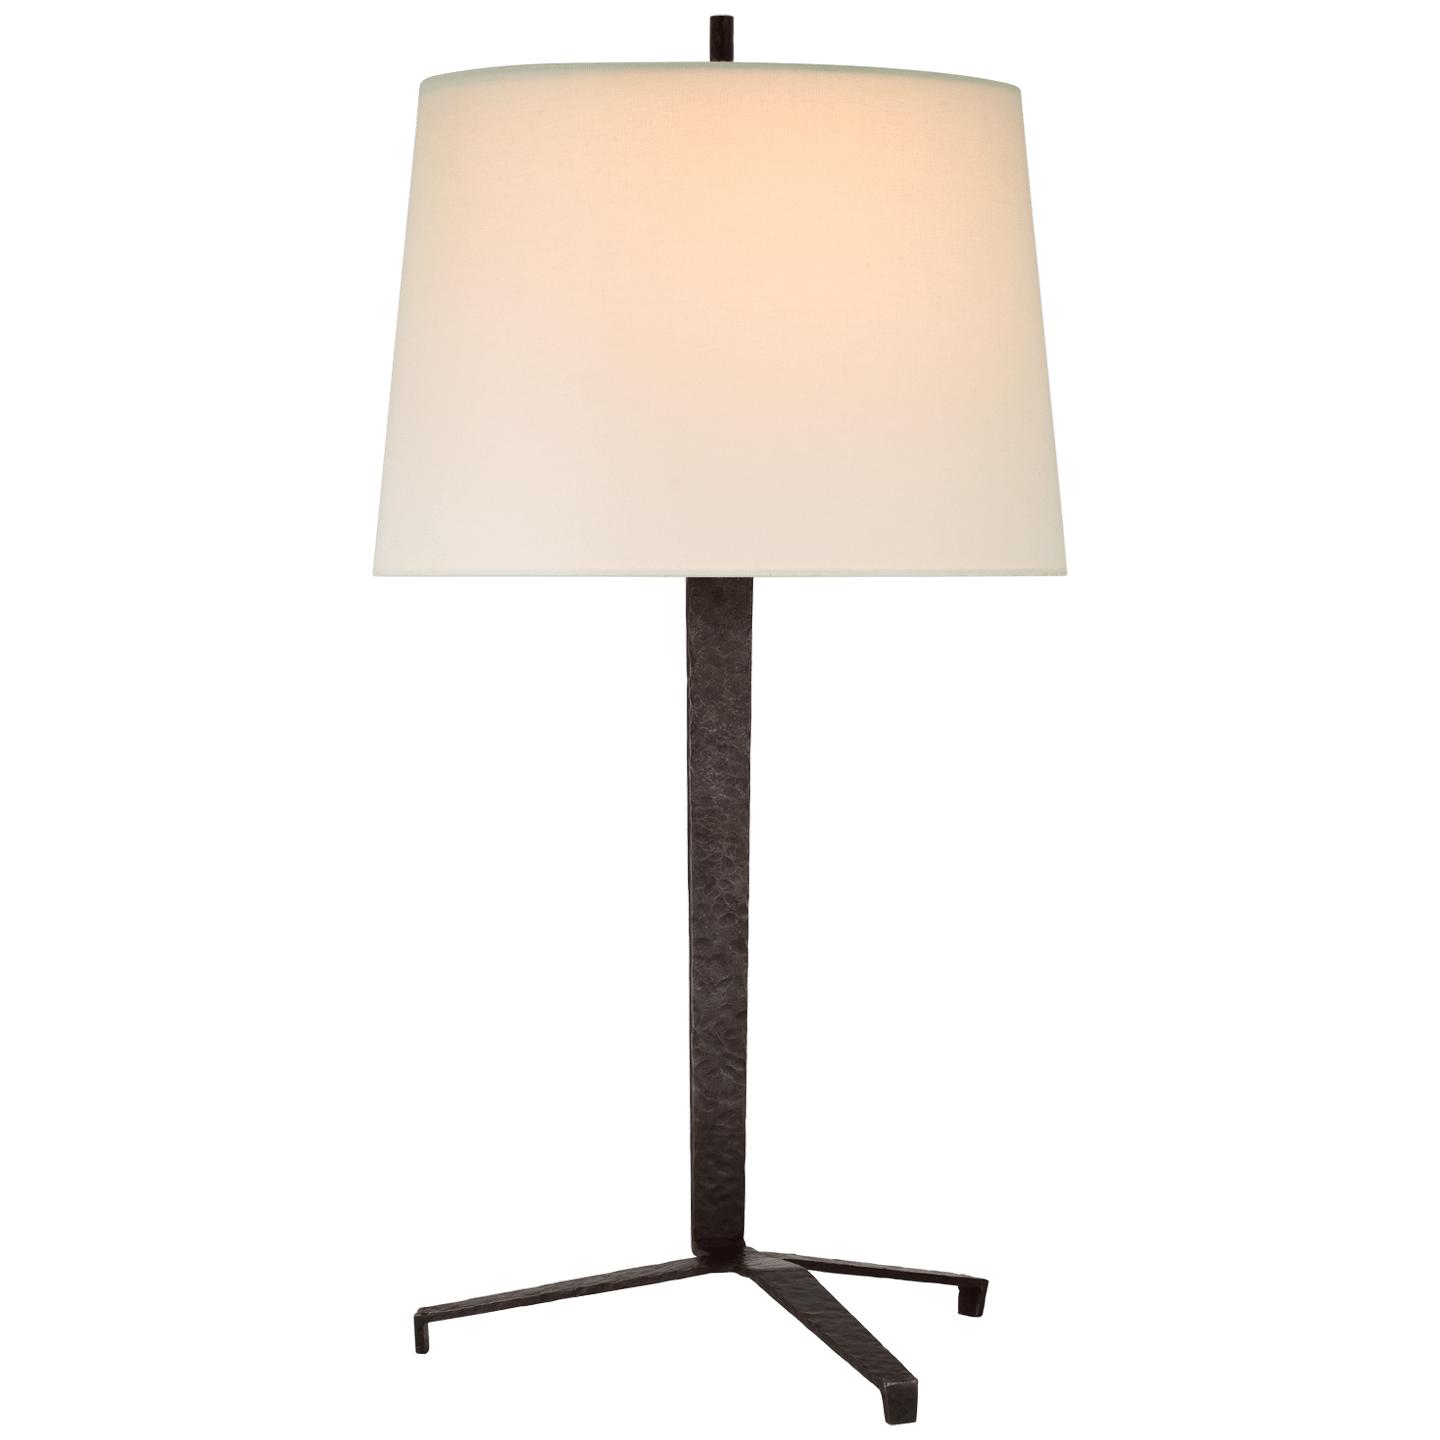 Купить Настольная лампа Francesco Large Table Lamp в интернет-магазине roooms.ru